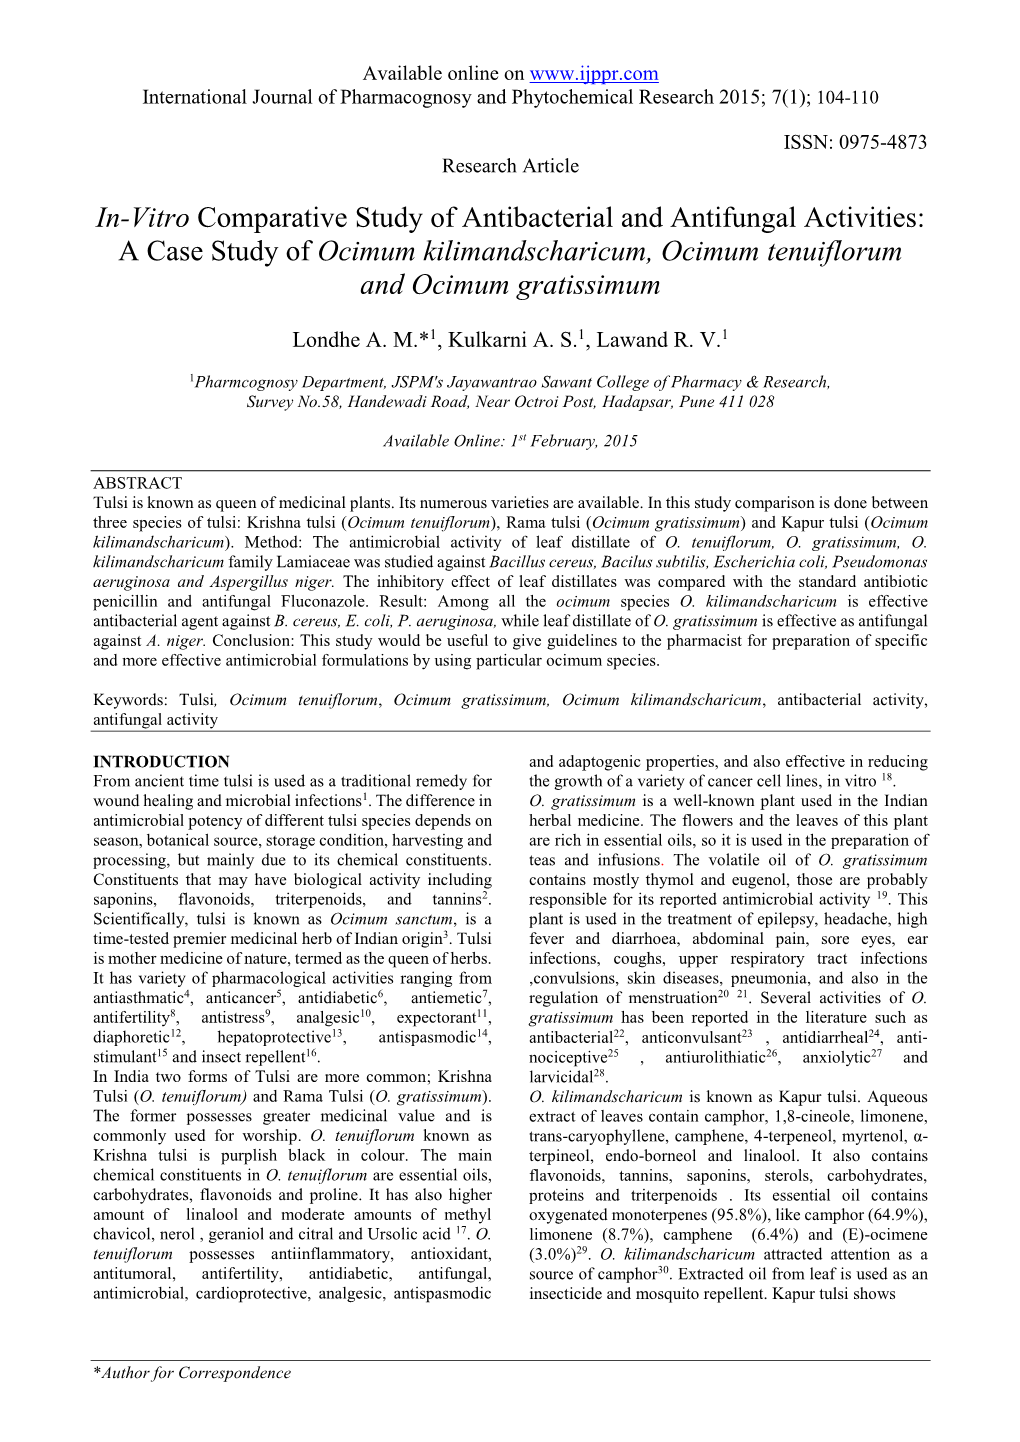 In-Vitro Comparative Study of Antibacterial and Antifungal Activities: a Case Study of Ocimum Kilimandscharicum, Ocimum Tenuiflorum and Ocimum Gratissimum